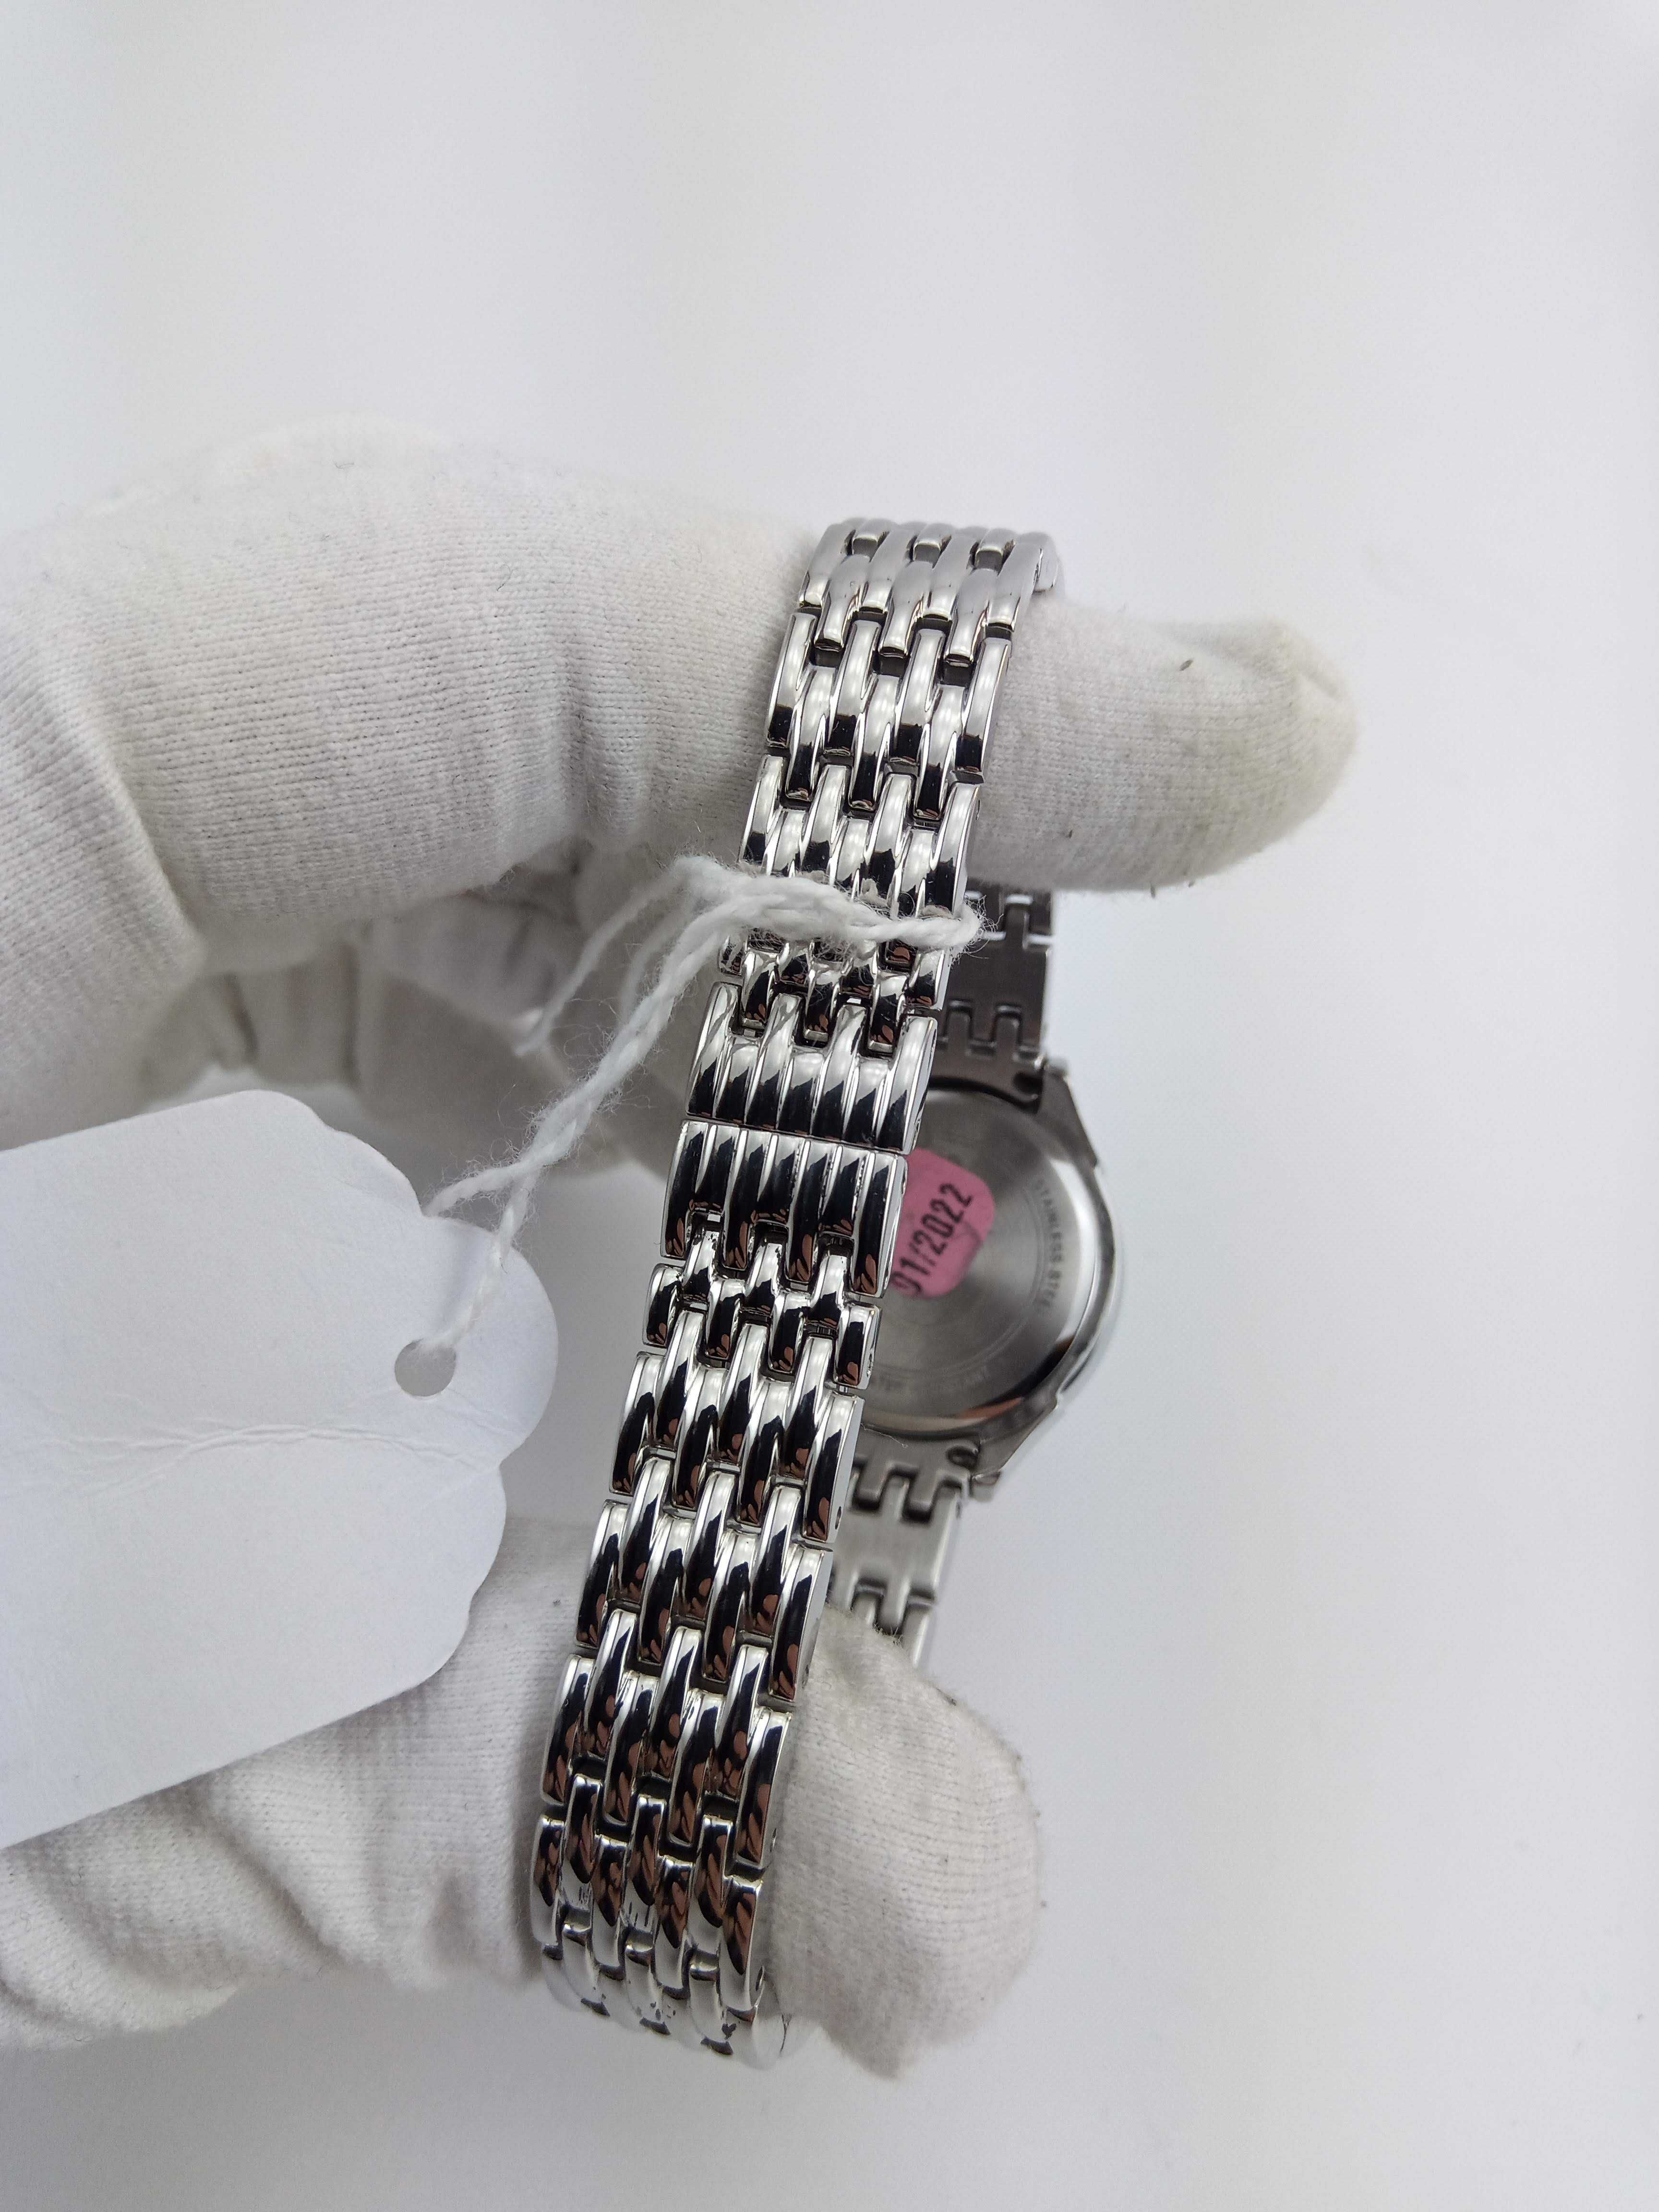 Женские часы Bulova 96L164, камни Swarovski. Идеальный подарок девушке